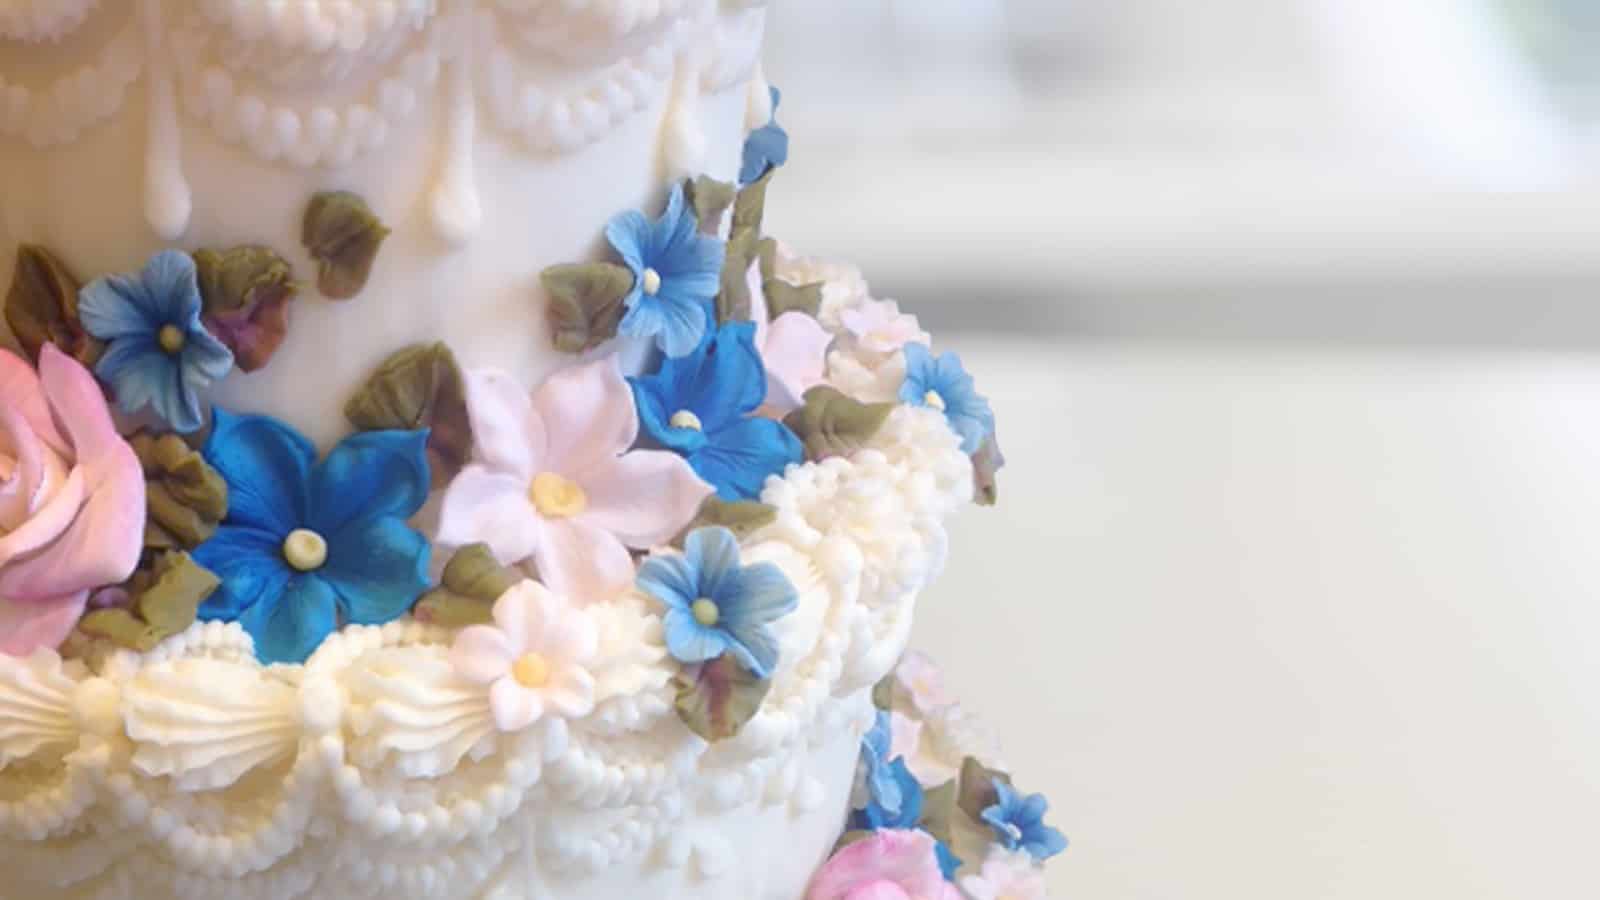 Cake decorating gum paste flowers with lucinda larson